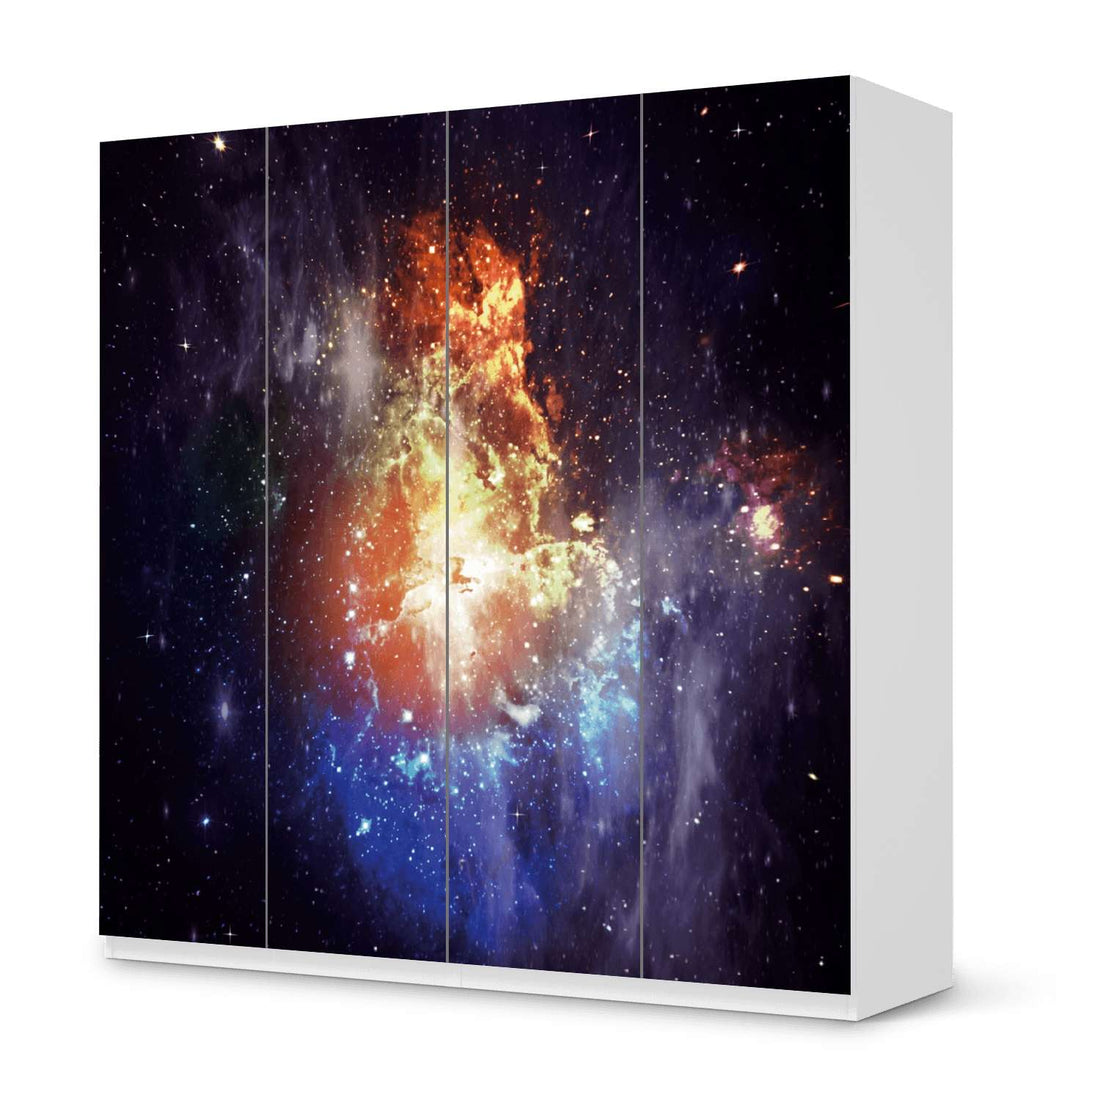 Klebefolie für Schränke Nebula - IKEA Pax Schrank 201 cm Höhe - 4 Türen - weiss